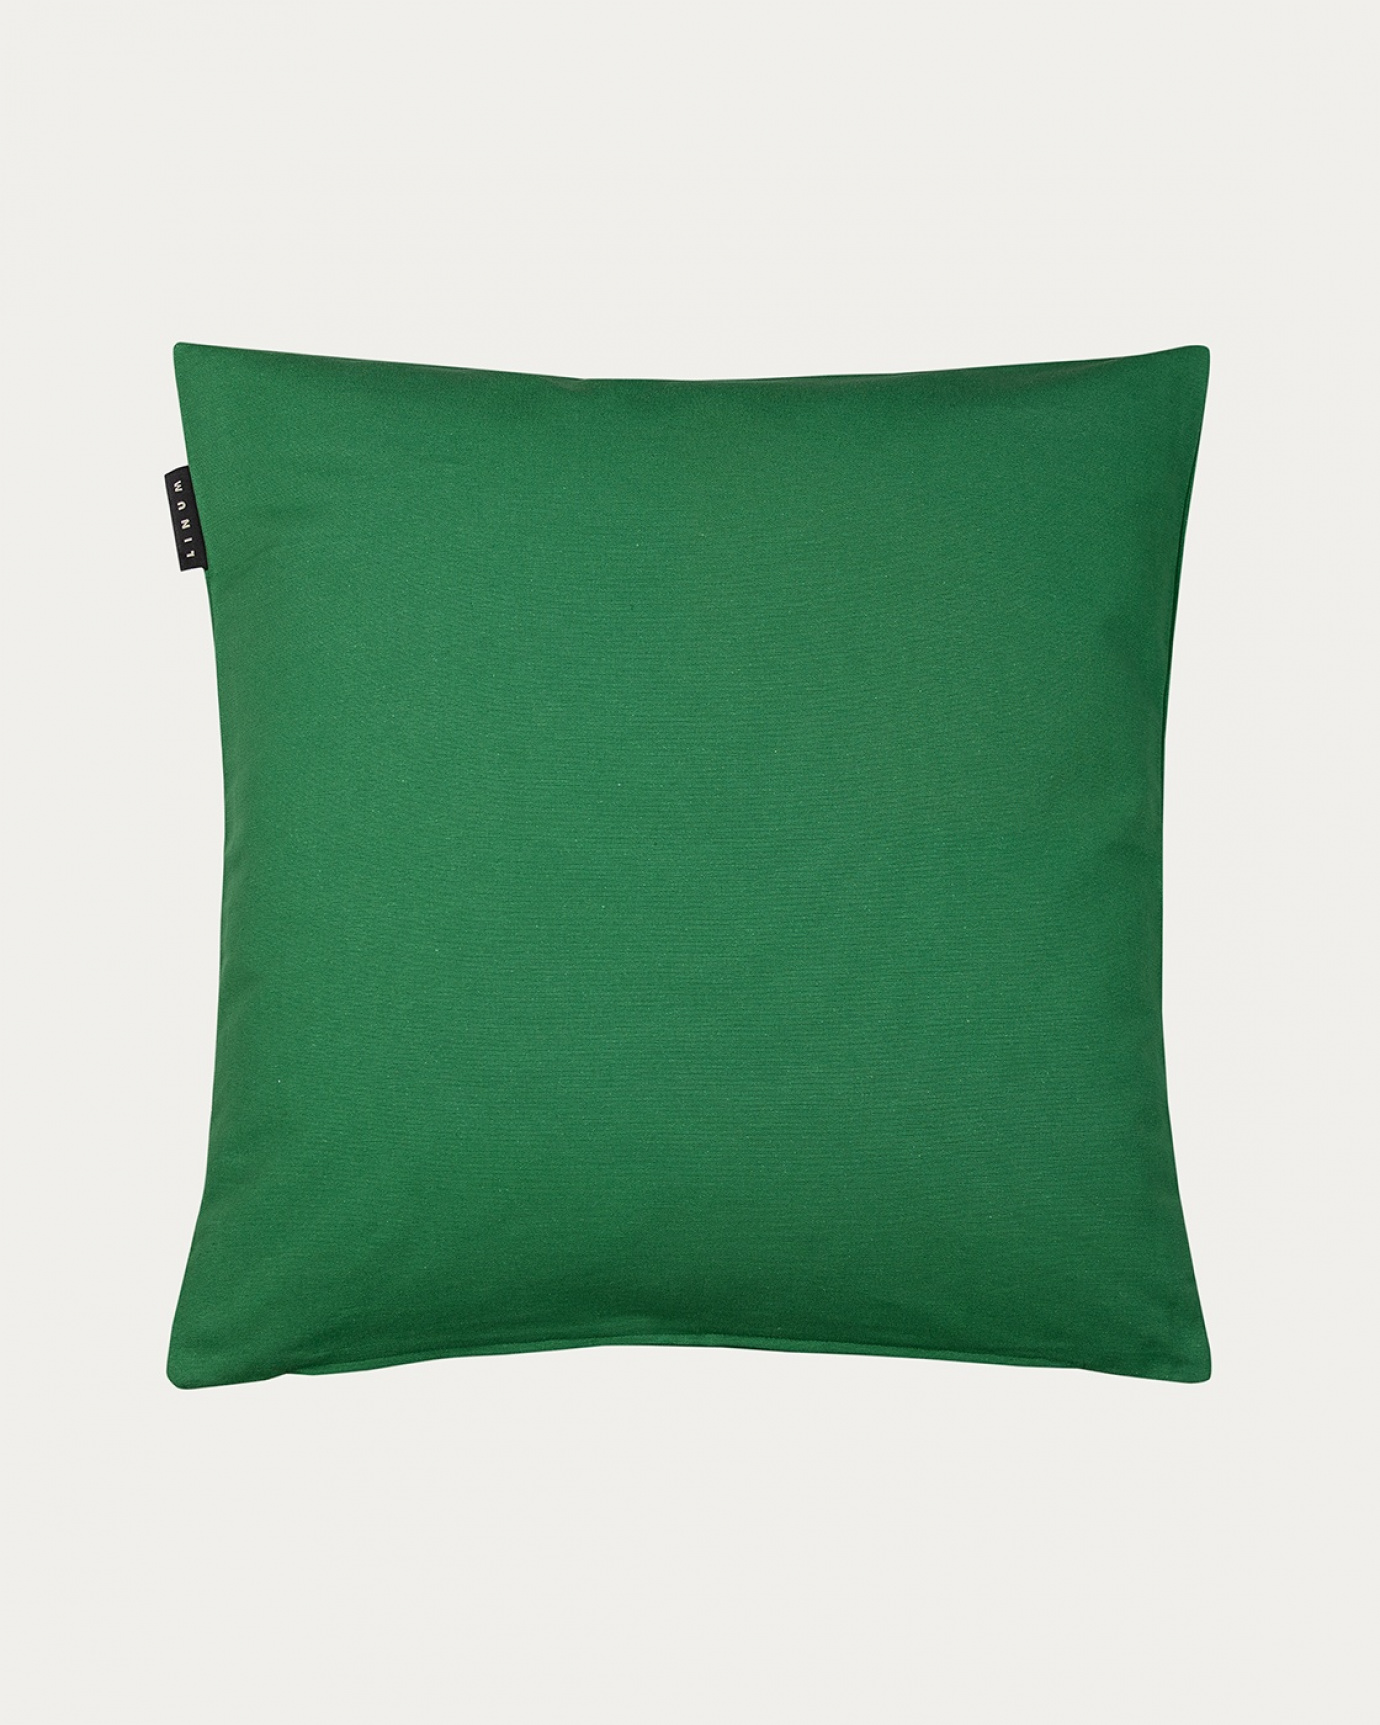 Produktbild wiesengrün ANNABELL Kissenhülle aus weicher Baumwolle von LINUM DESIGN. Größe 50x50 cm.